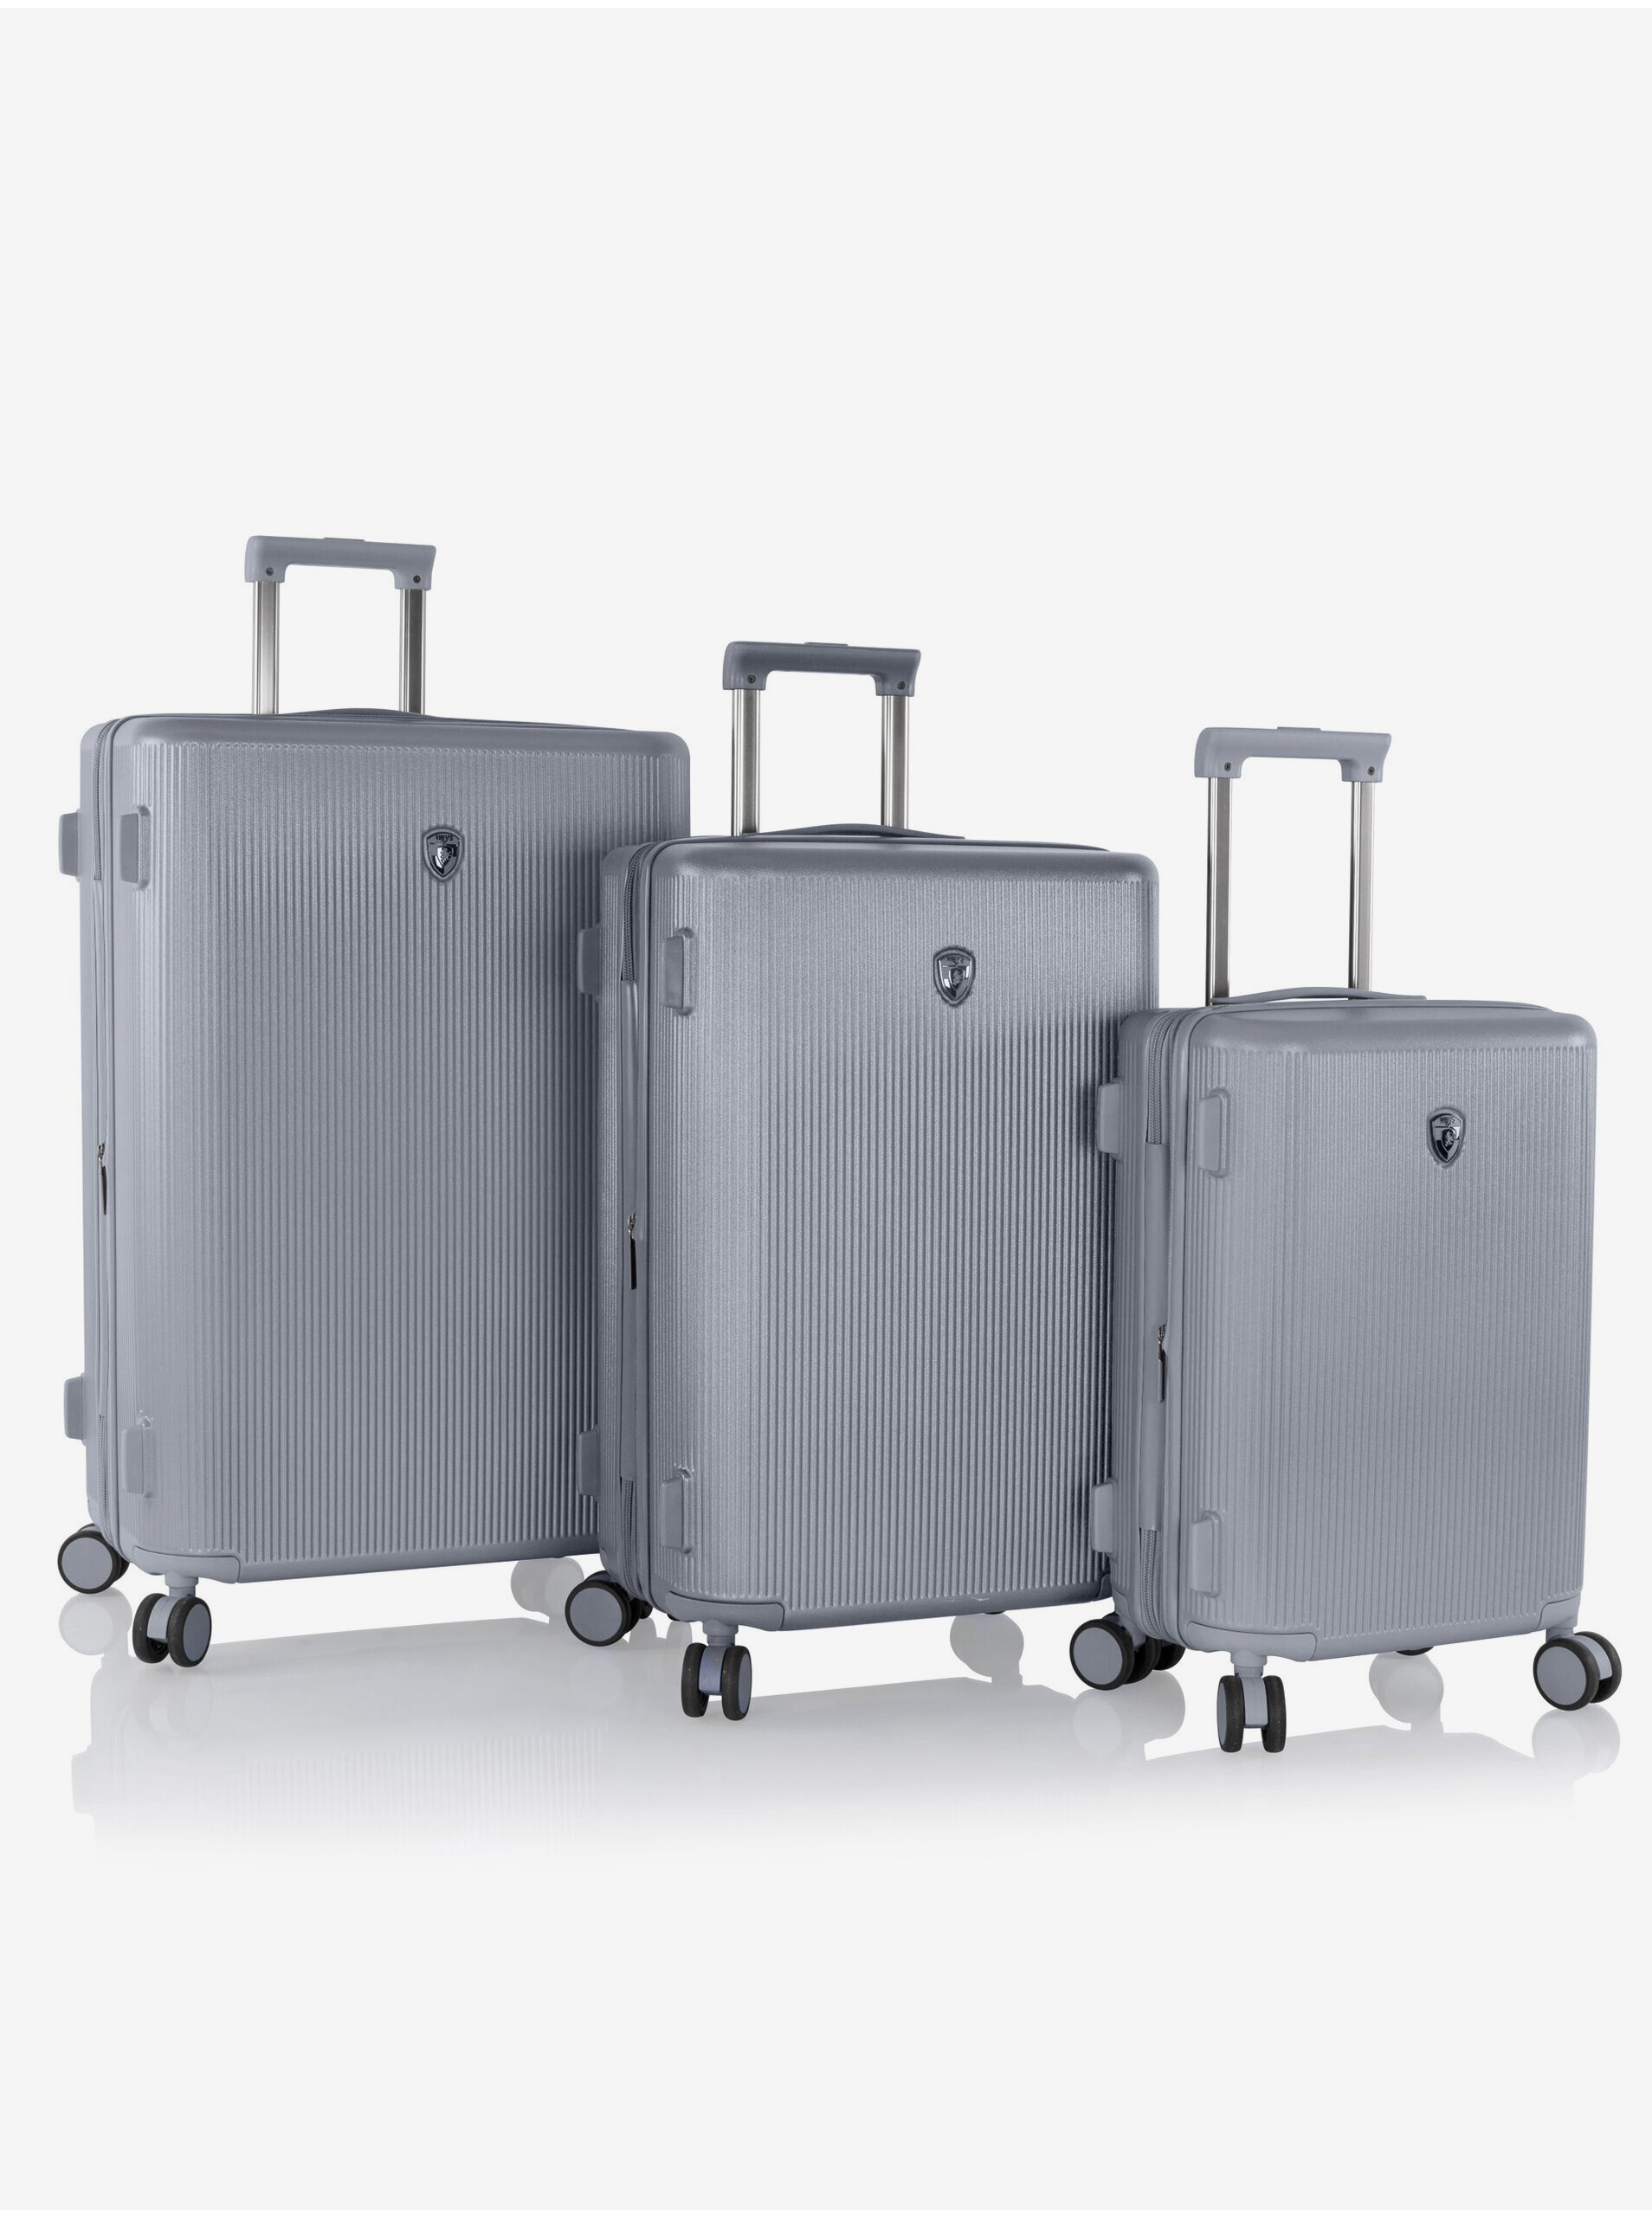 E-shop Sada tŕí cestovních kufrů v šedé barvě Heys Earth Tones S,M,L Glacier Grey